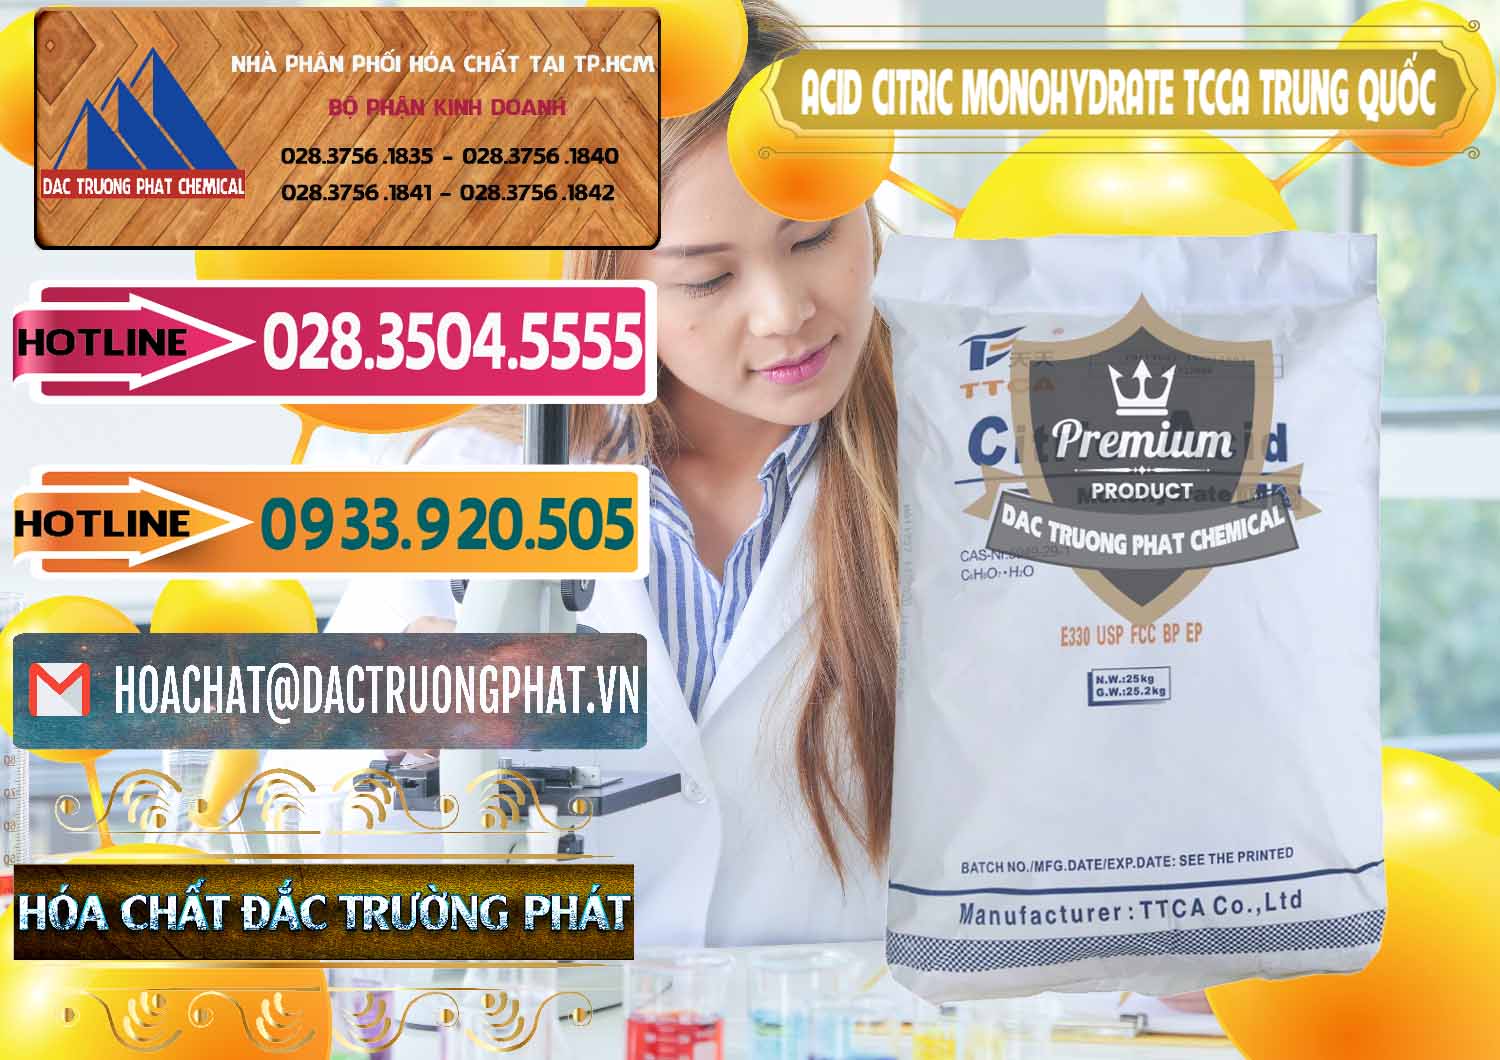 Chuyên cung cấp - bán Acid Citric - Axit Citric Monohydrate TCCA Trung Quốc China - 0441 - Công ty cung cấp & nhập khẩu hóa chất tại TP.HCM - dactruongphat.vn